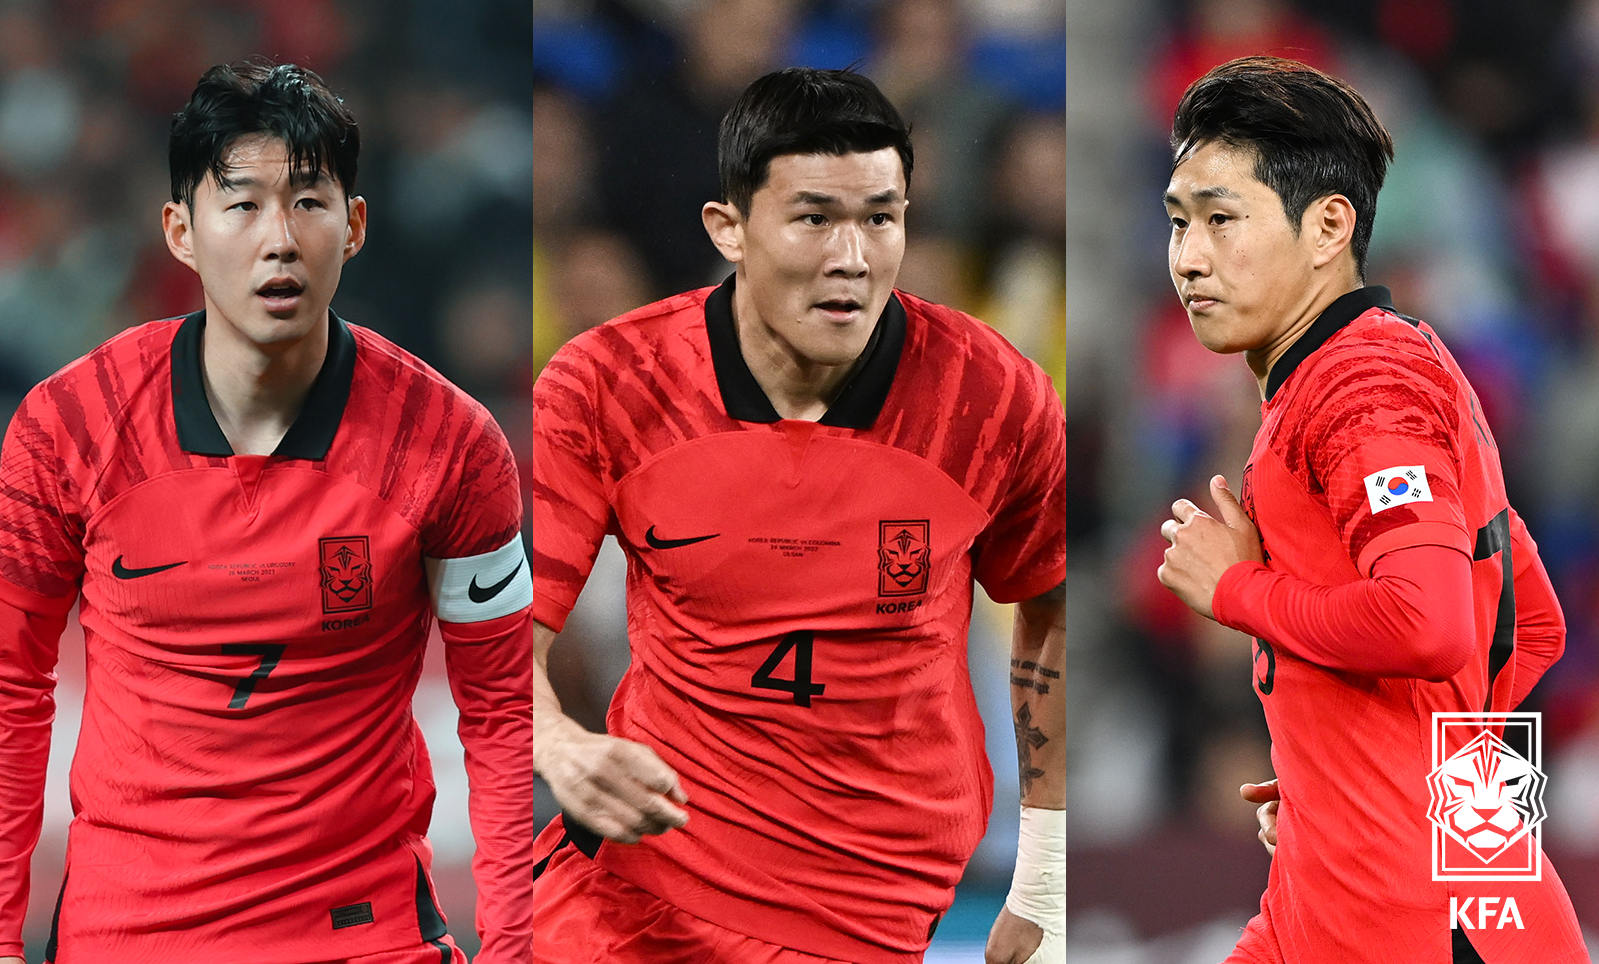 2026 북중미 월드컵 예선 일정 조편성 한국 축구 국가대표 평가전 일정